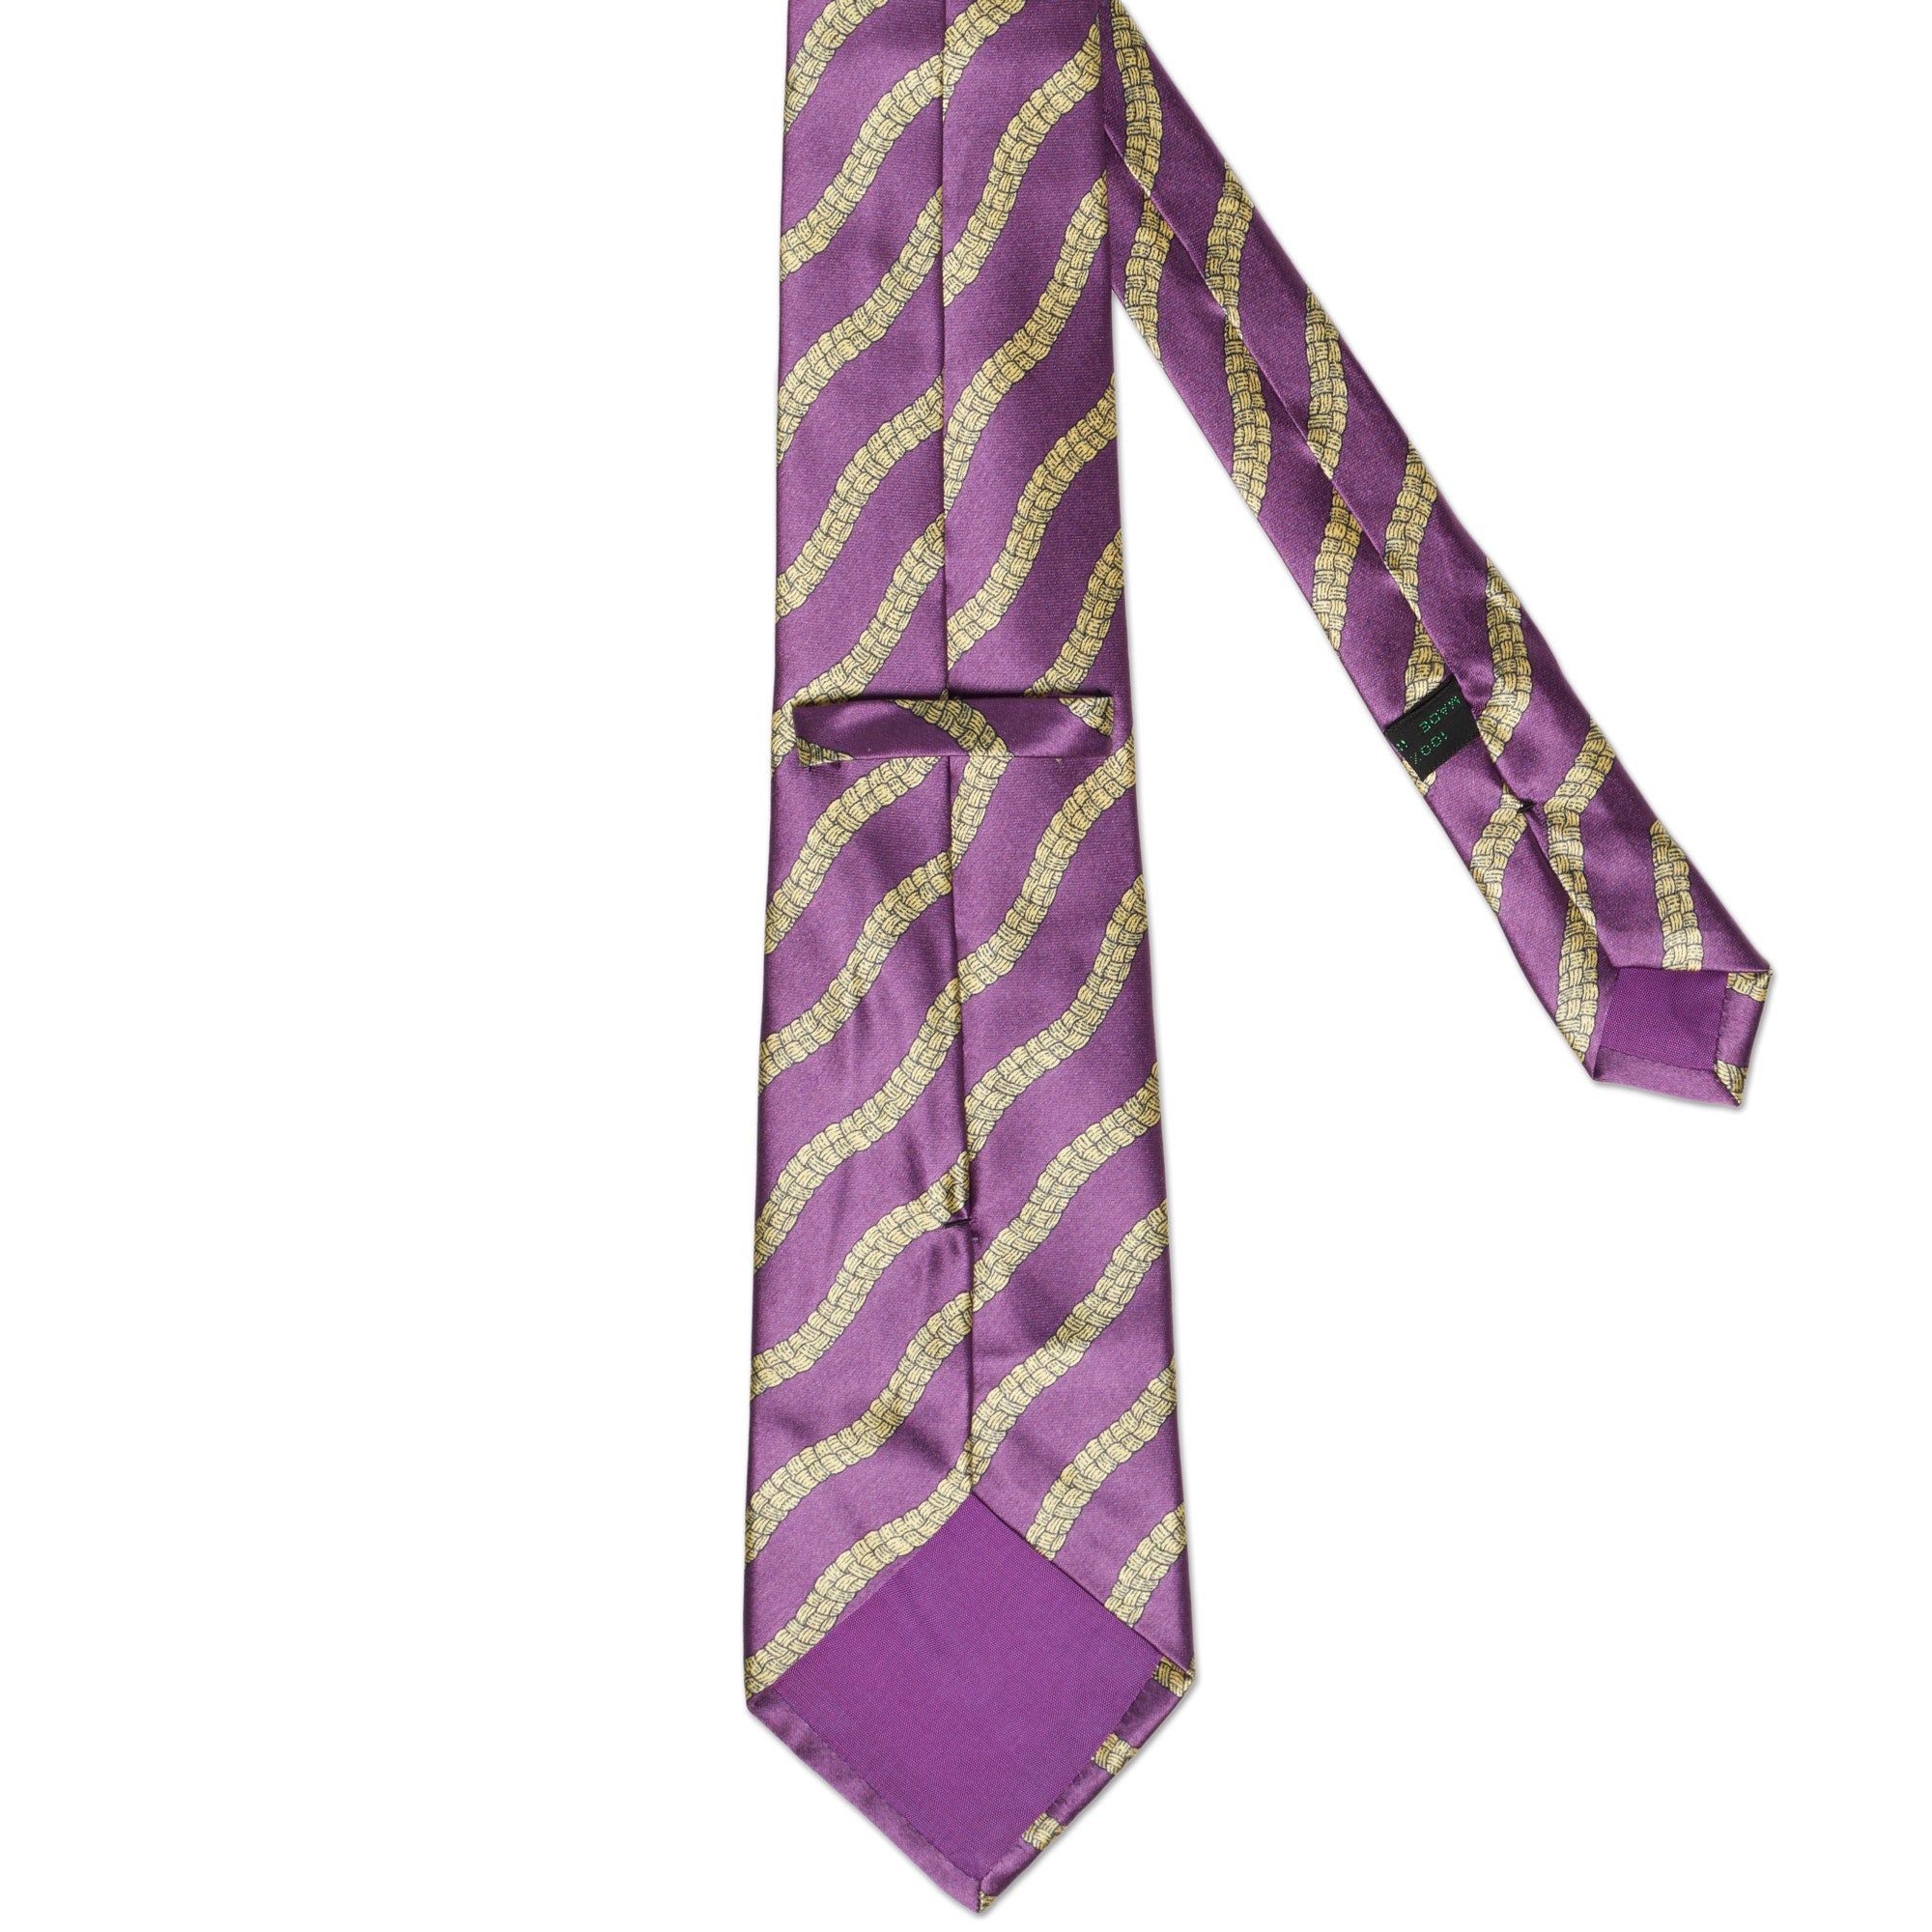 BOTTEGA VENETA Handmade Purple-Yellow Striped Silk Tie BOTTEGA VENETA